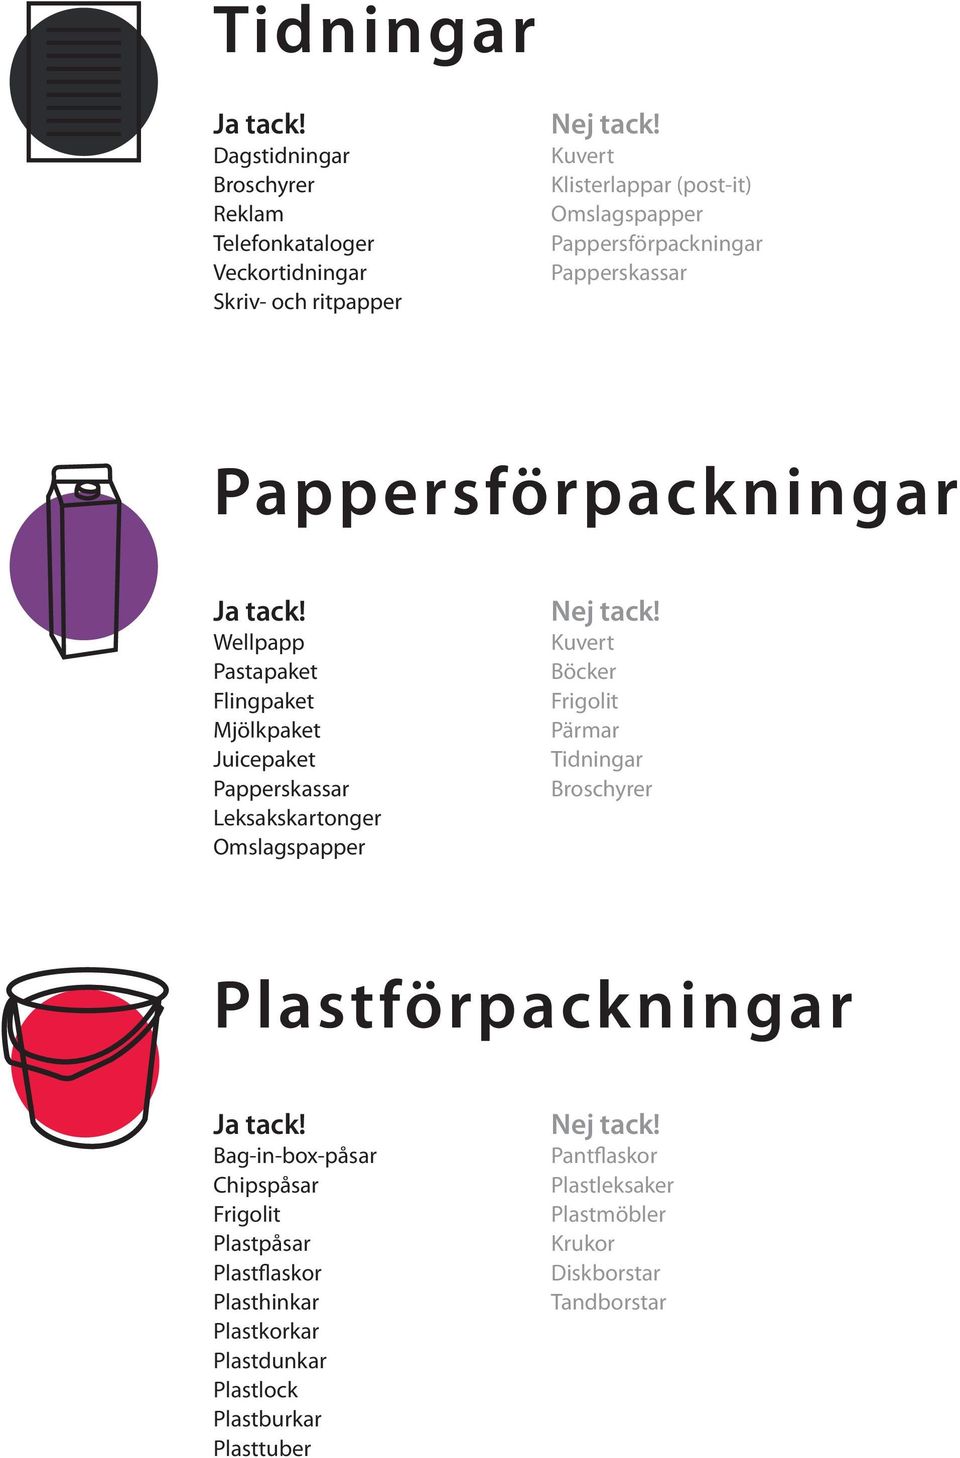 Omslagspapper Kuvert Böcker Frigolit Pärmar Tidningar Broschyrer Plastförpackningar Bag-in-box-påsar Chipspåsar Frigolit Plastpåsar